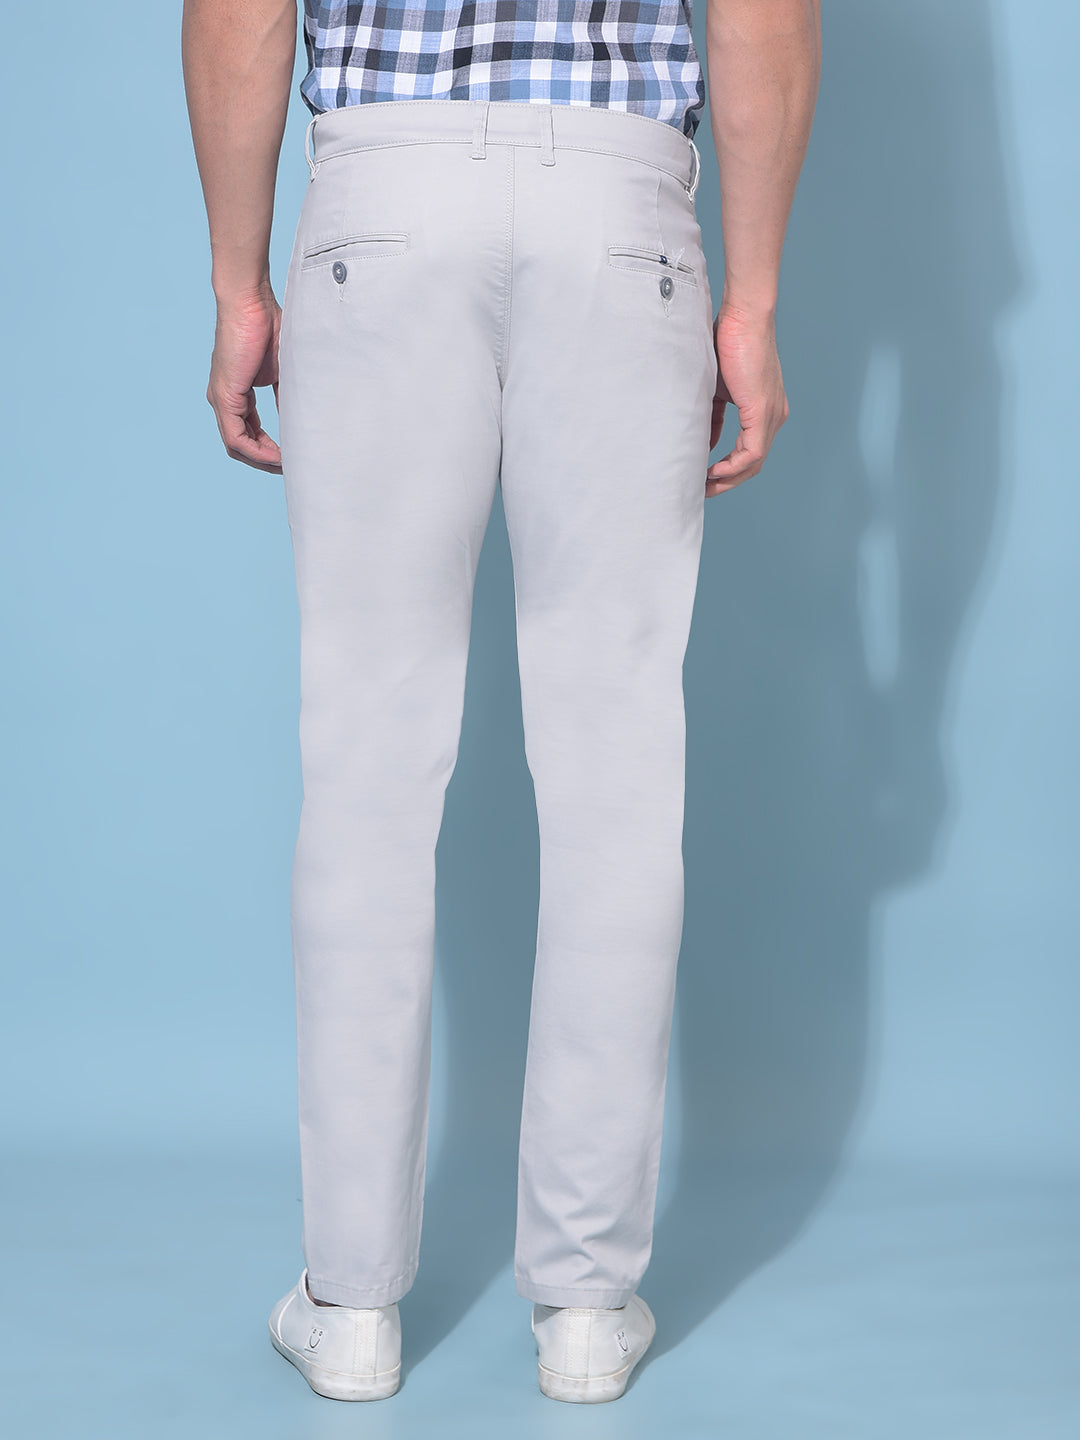 Grey Stretchable Cotton Trousers-Men Trousers-Crimsoune Club